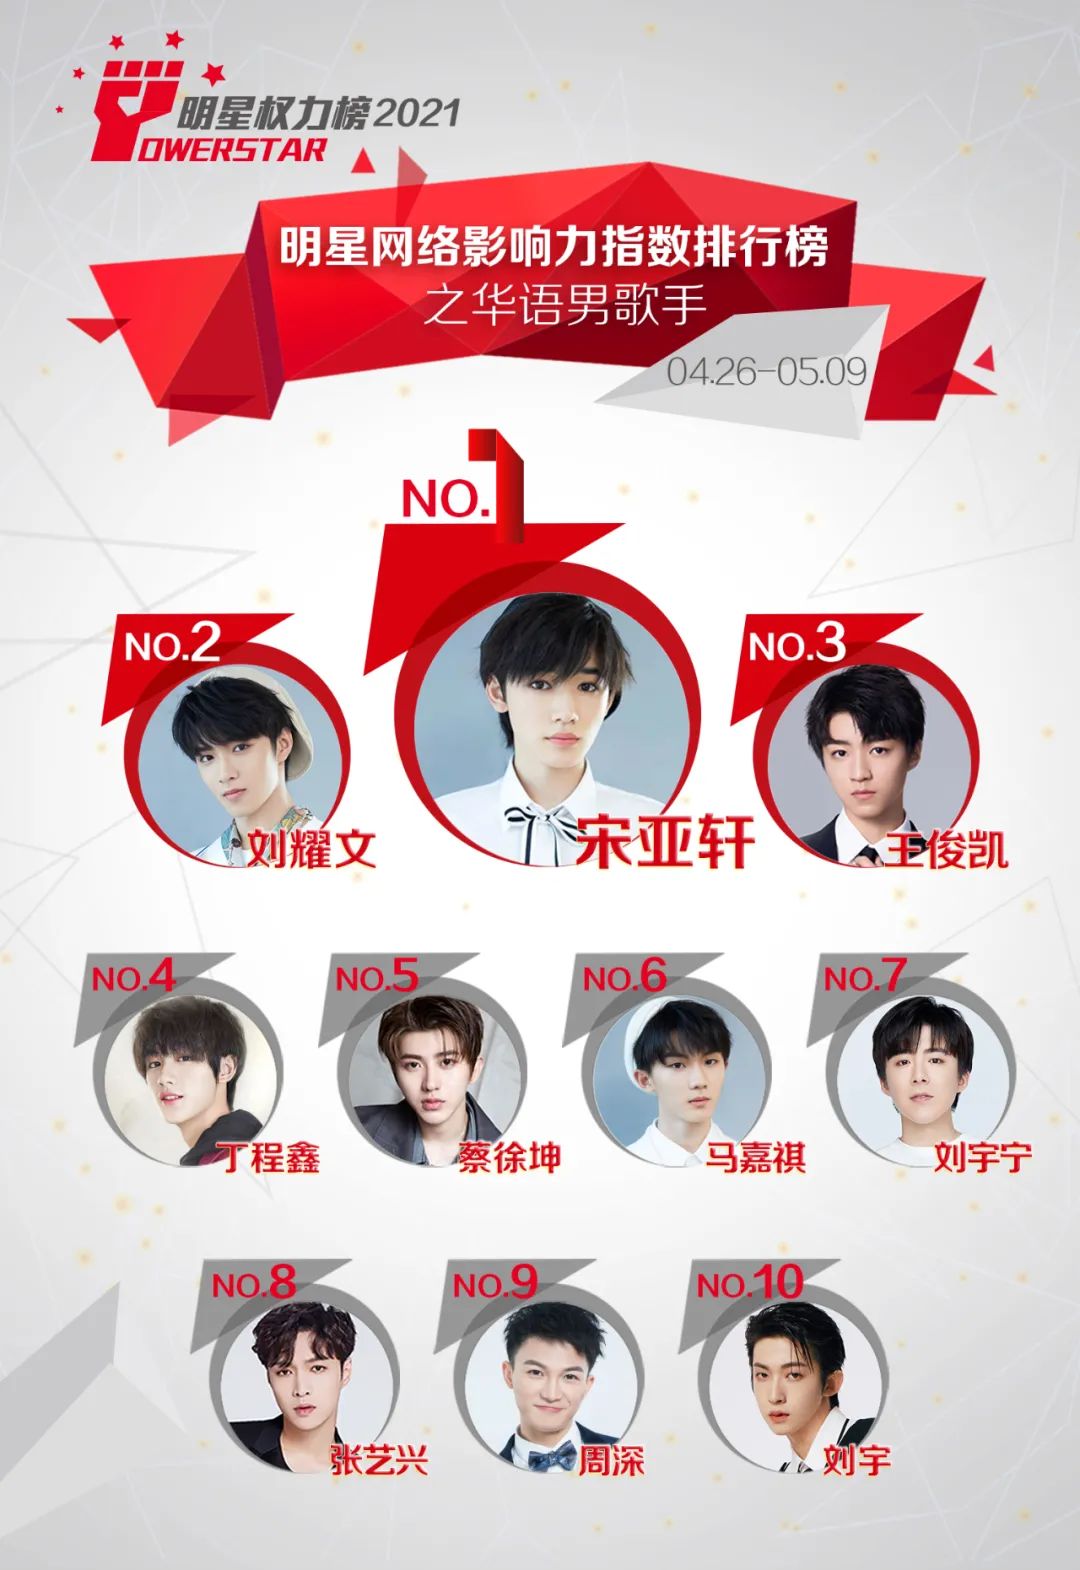 明星网络影响力指数排行榜第291期榜单之华语男歌手Top10